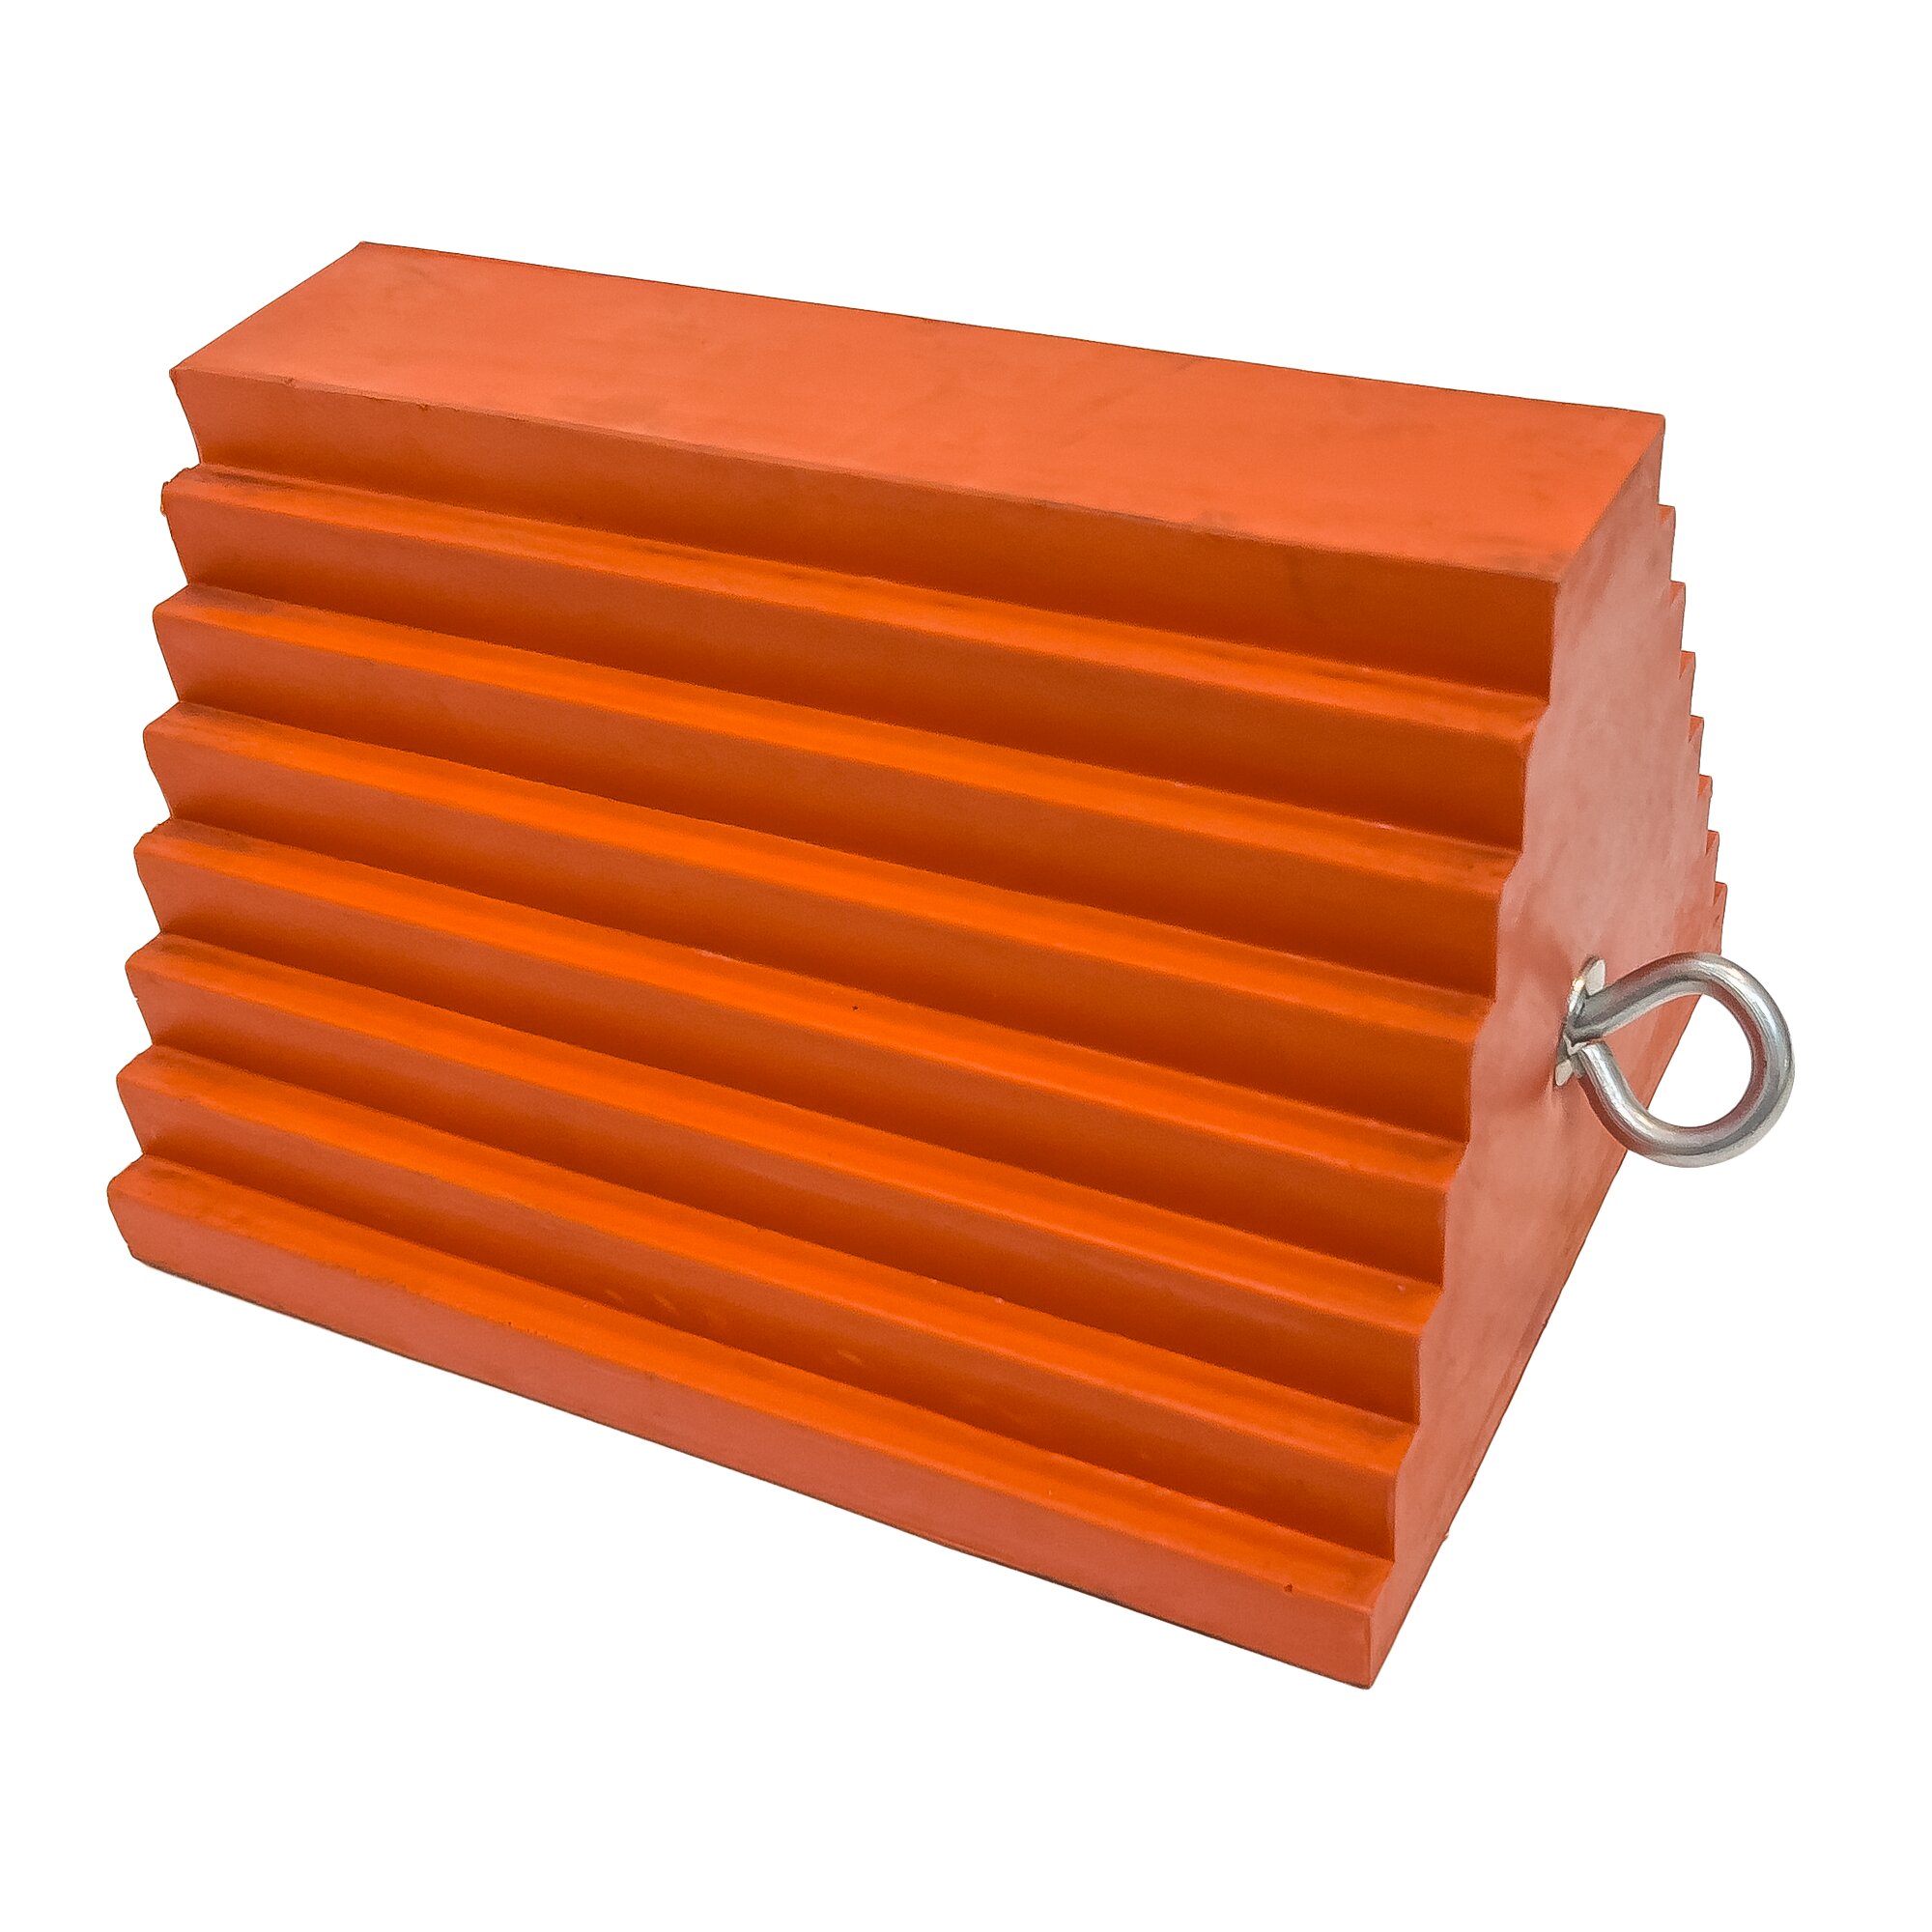 Oranžový plastový zakládací klín UCTS003 - délka 25 cm, šířka 20 cm, výška 15 cm